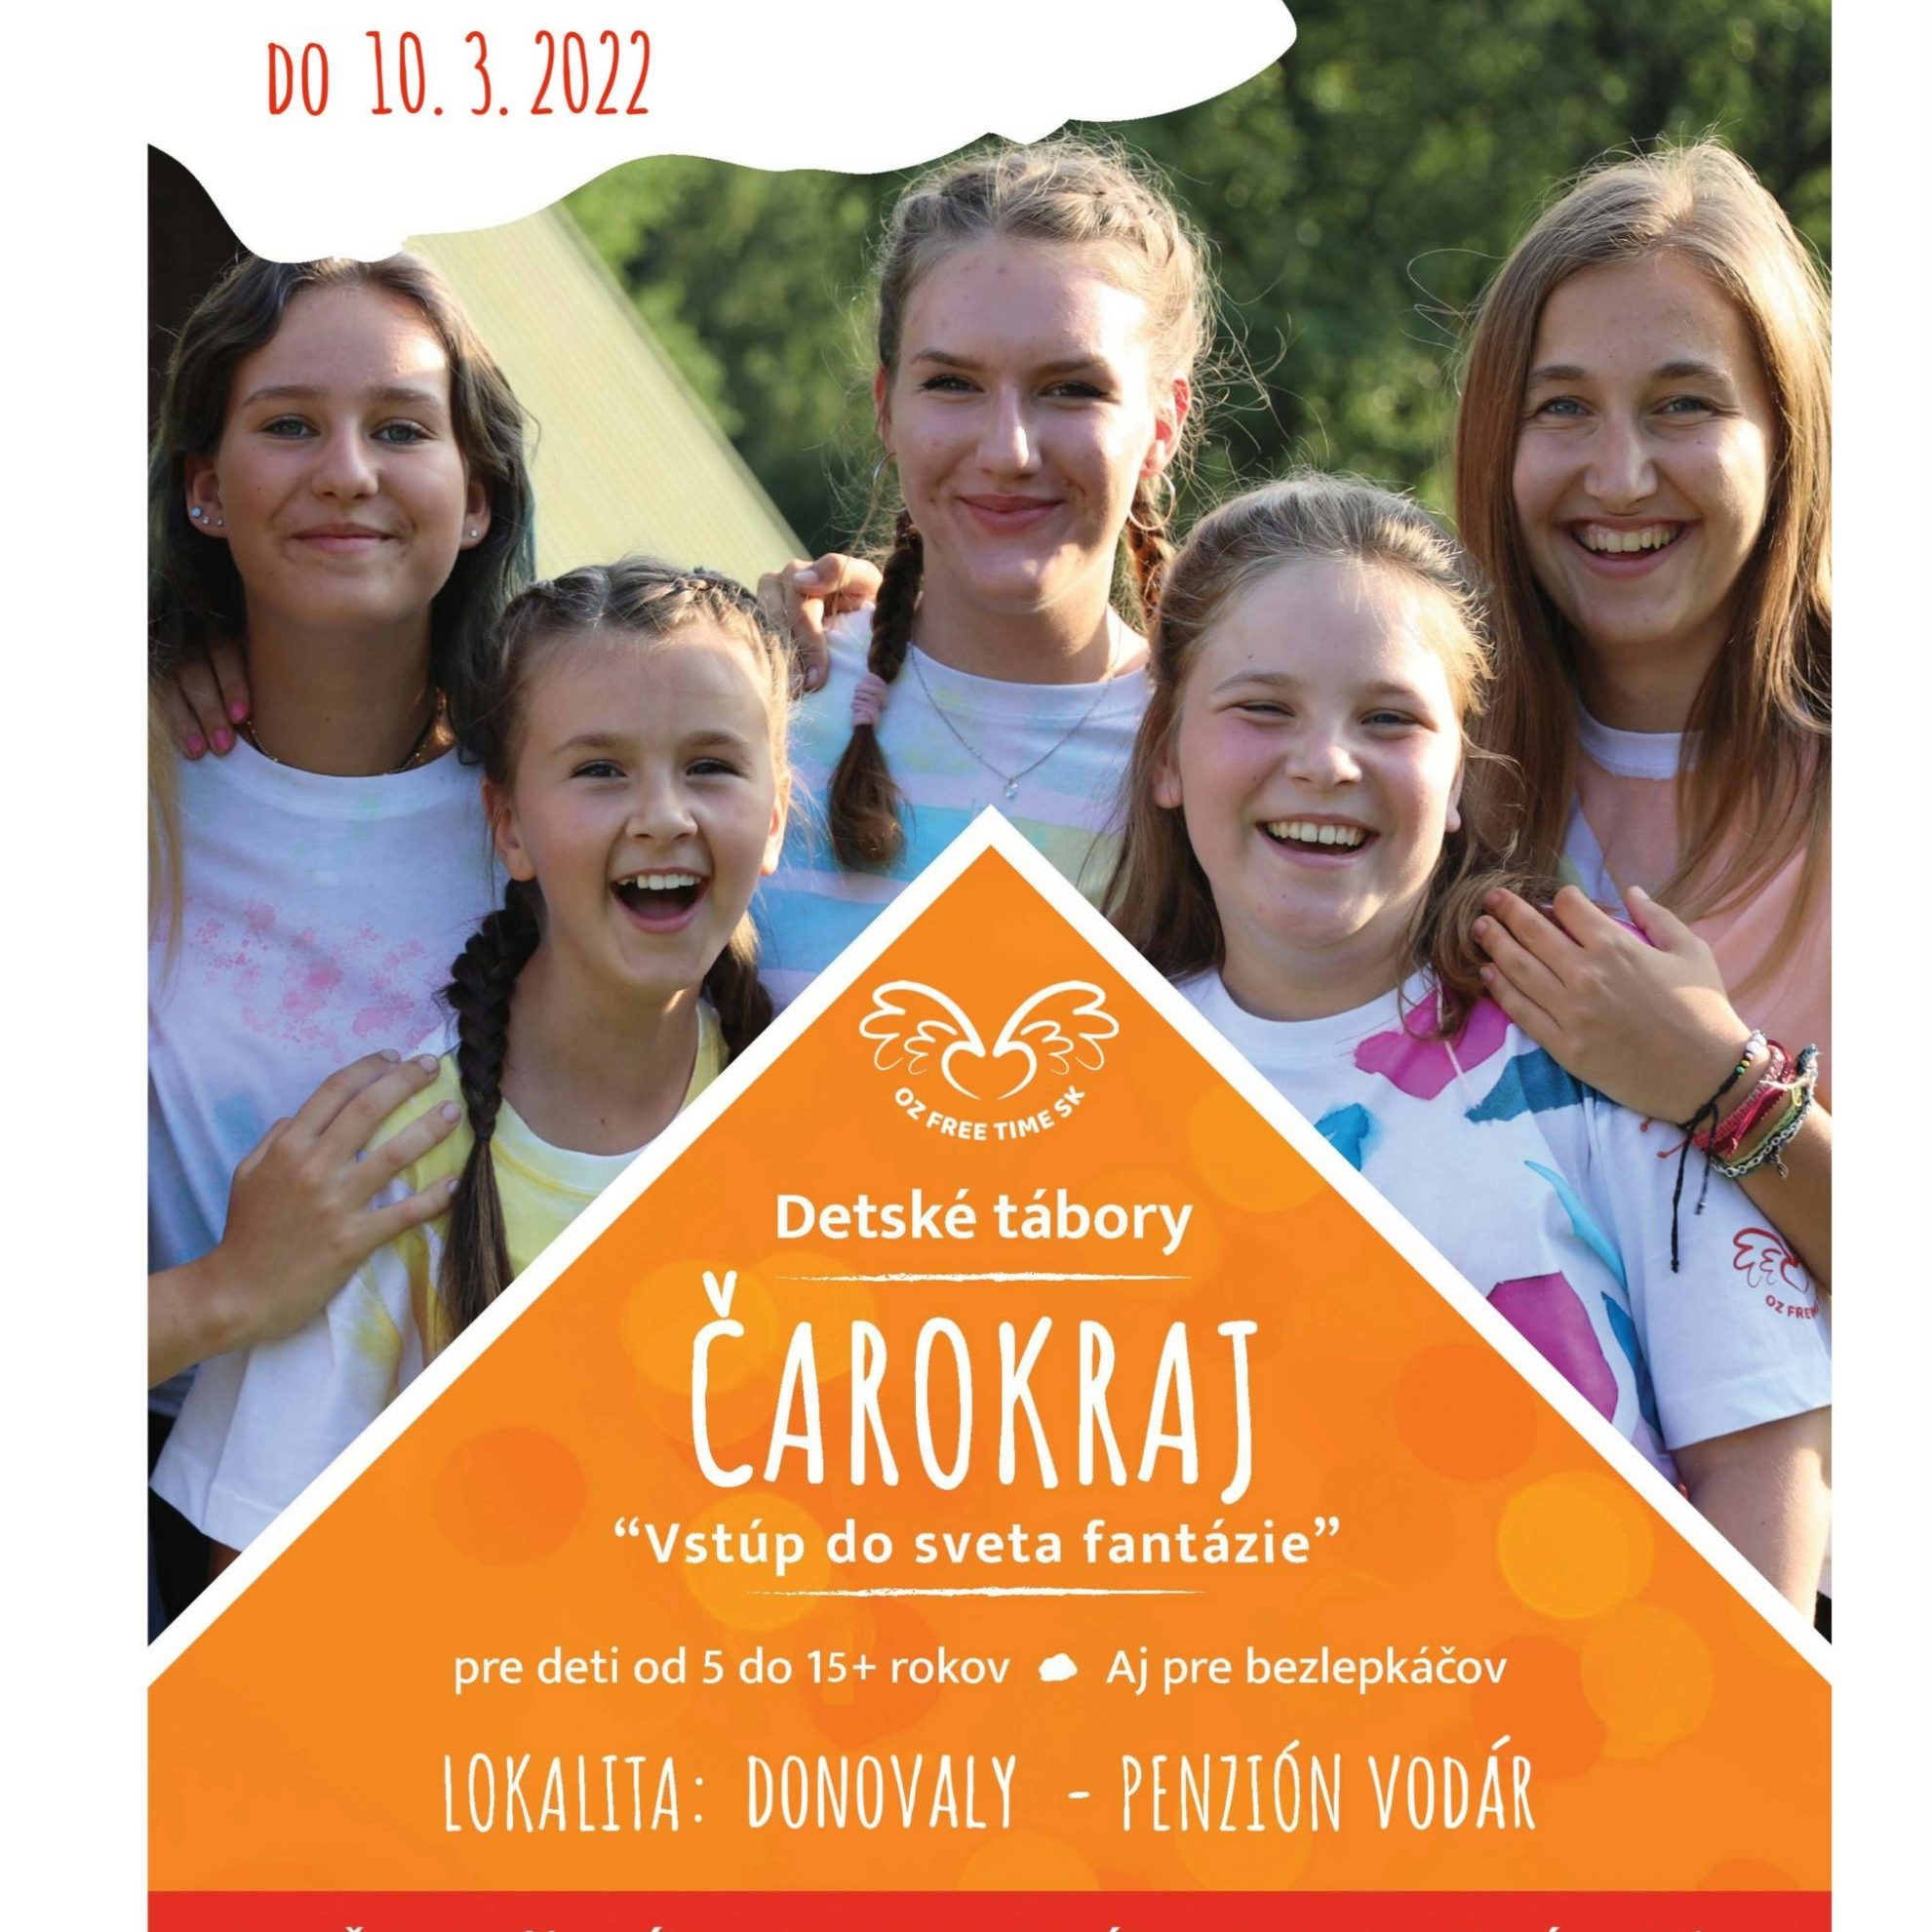 Detský tábor Čarokraj s OZ FREE TIME SK